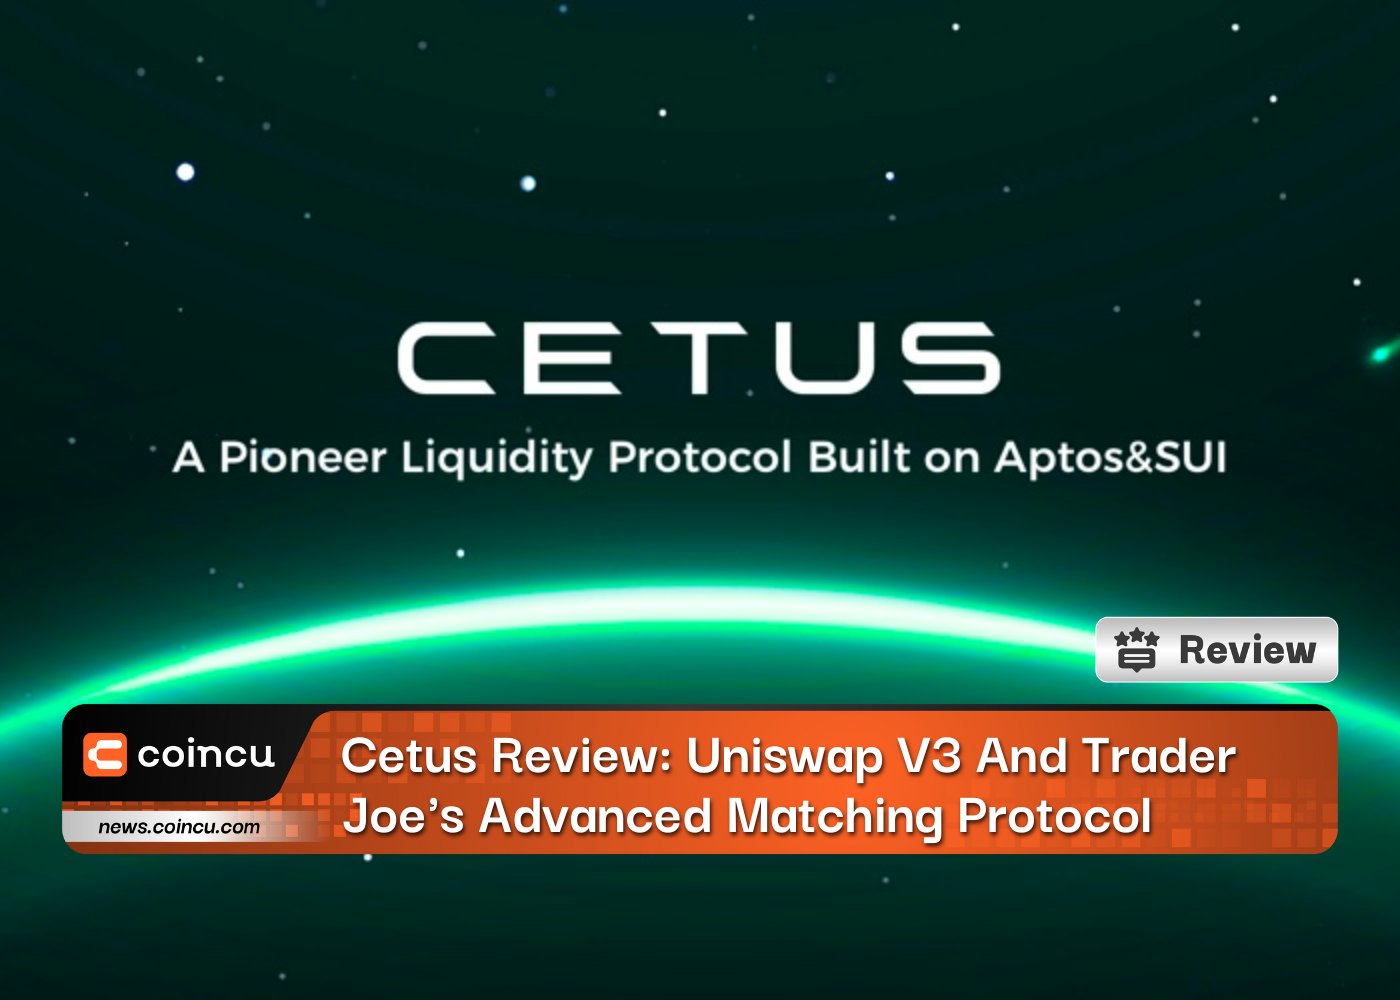 Cetus 검토: Uniswap V3 및 Trader Joe의 고급 매칭 프로토콜